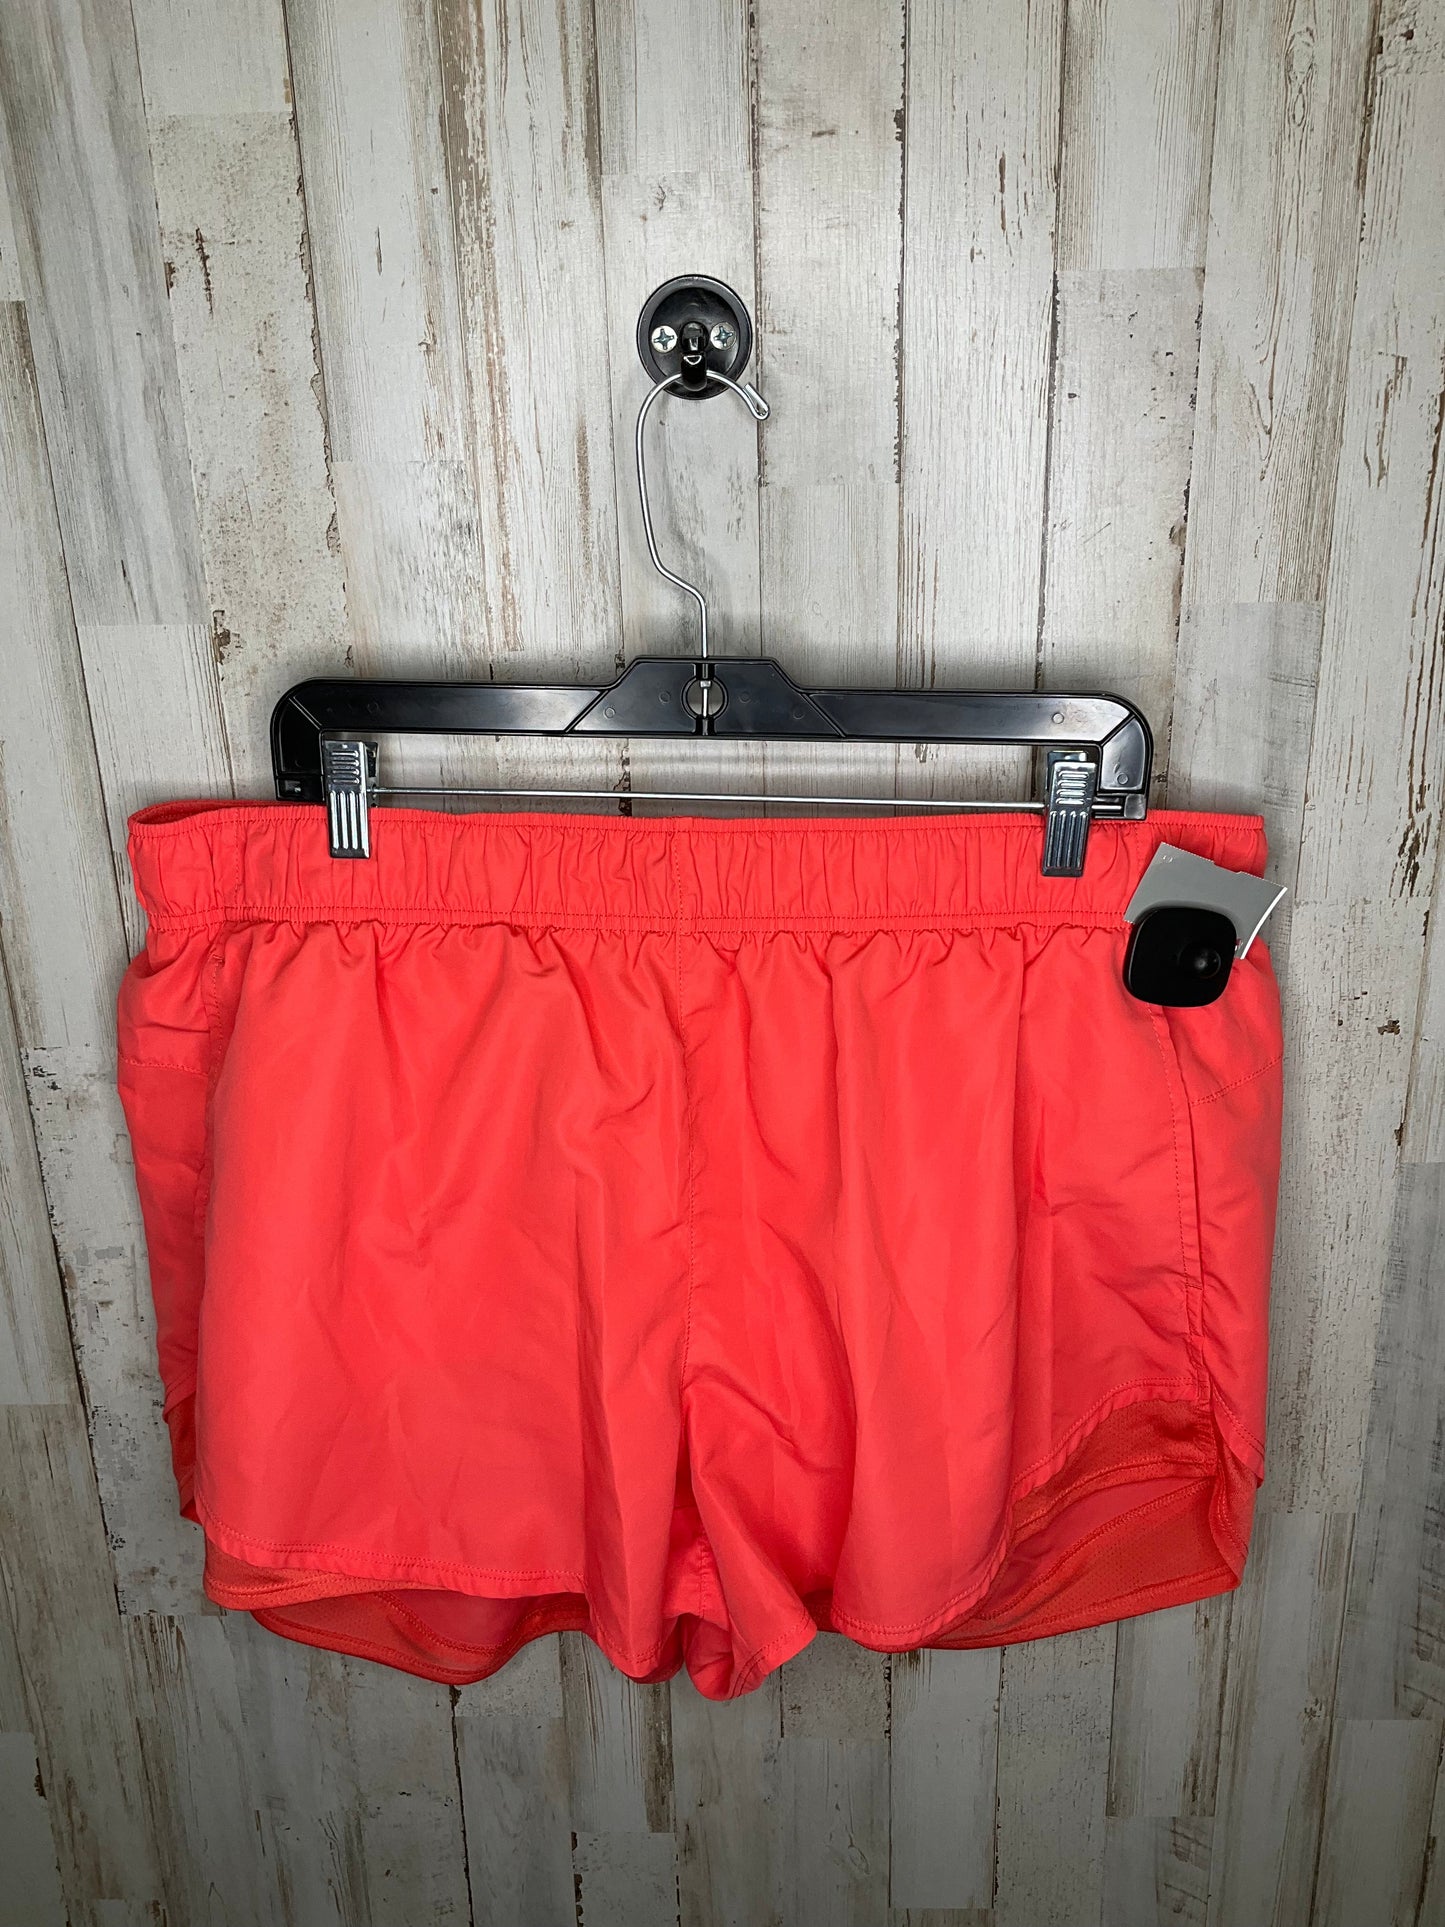 Orange Athletic Shorts Athletic Works, Size 3x